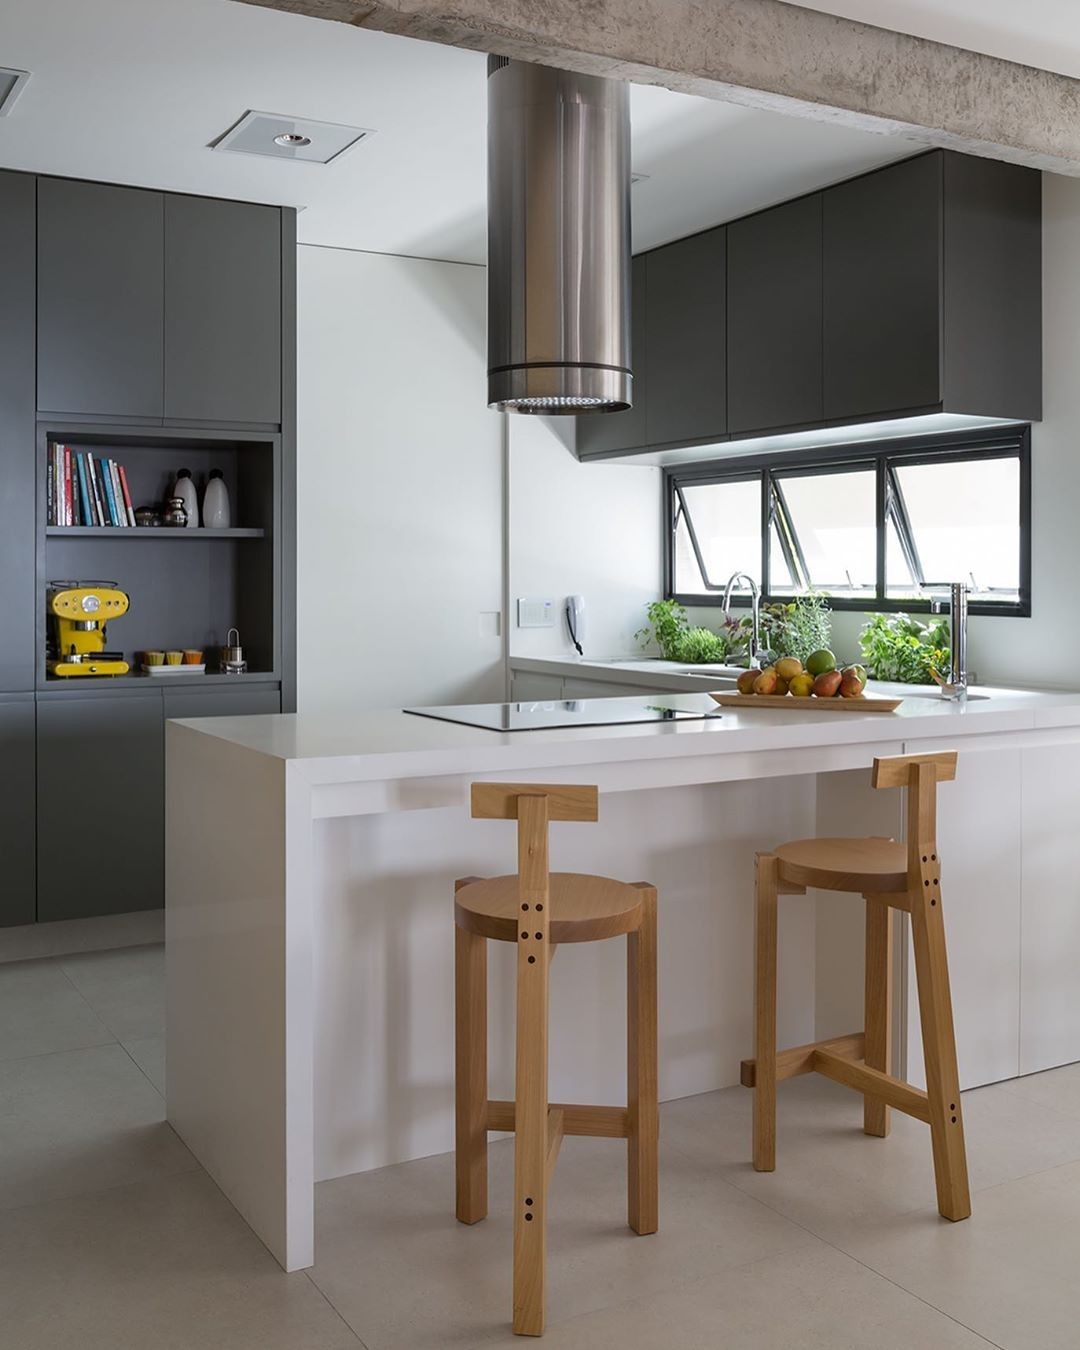 Cozinha compacta: ideias de decoração para espaços pequenos (Foto: Evelyn Müller)